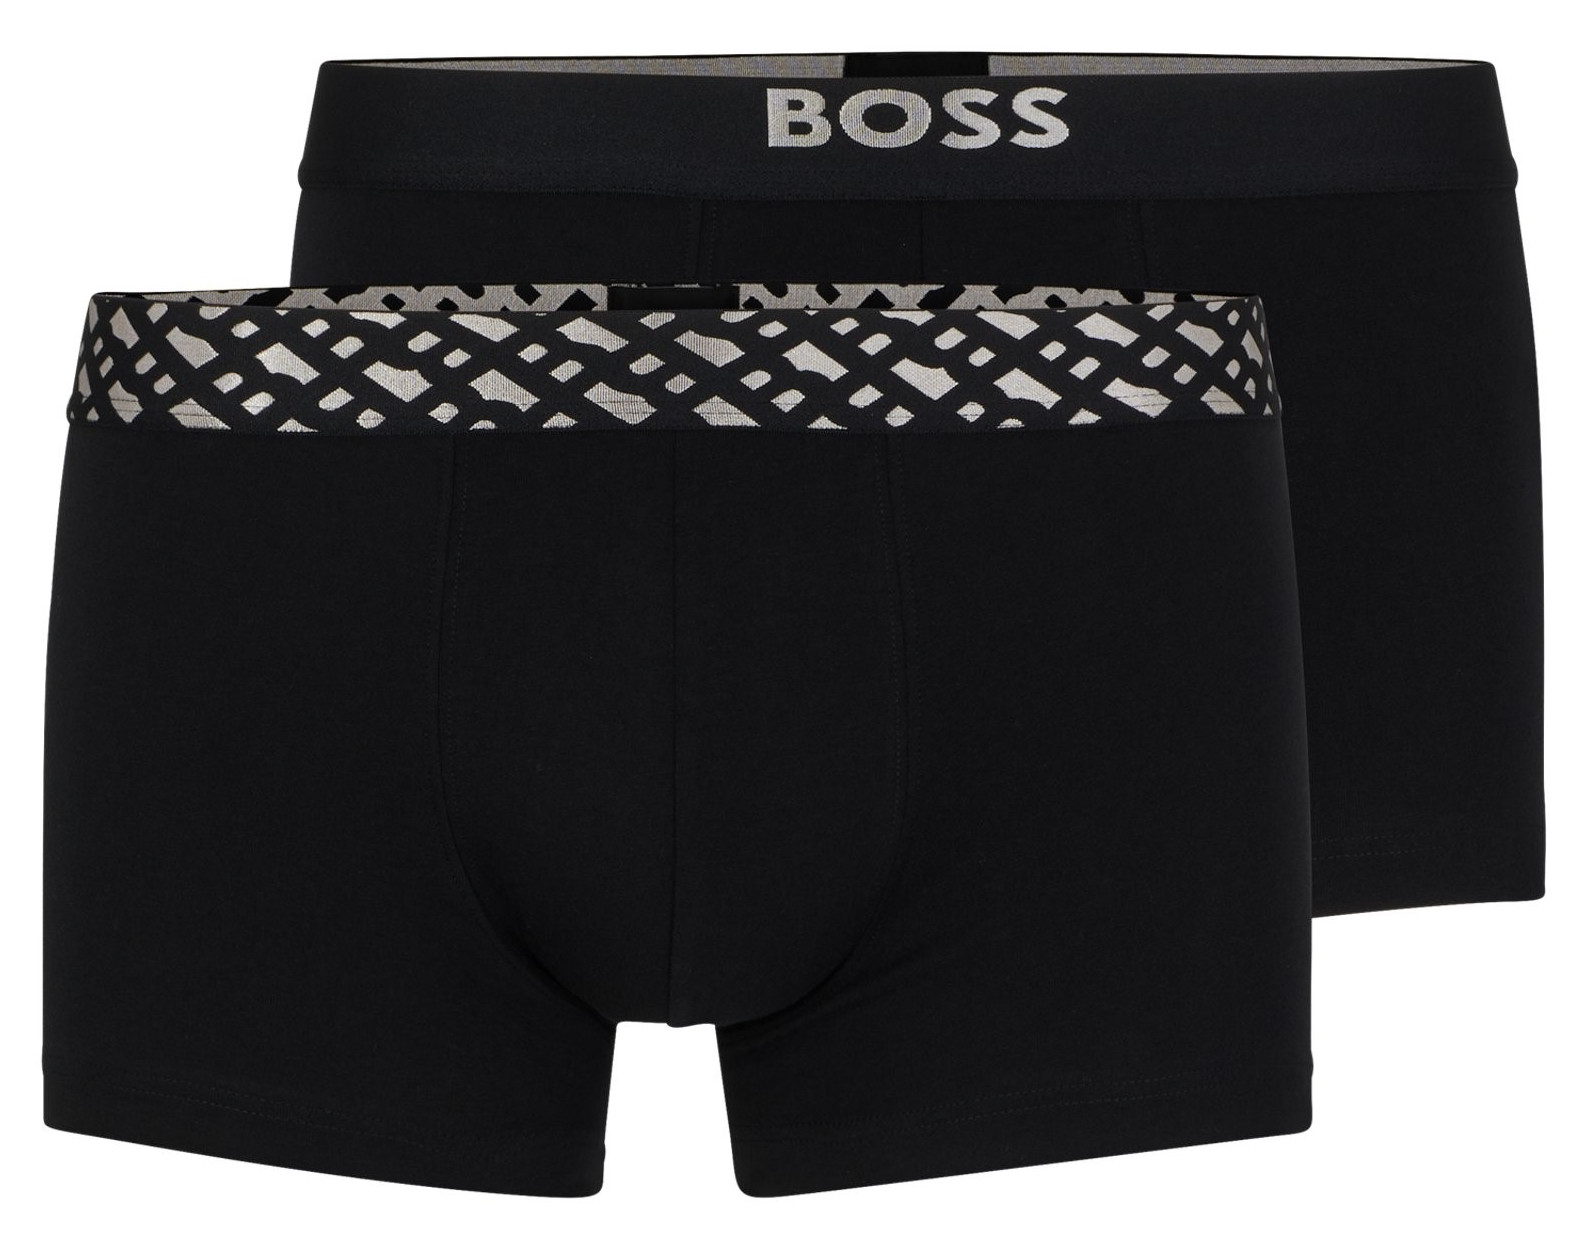 Hugo Boss 2 PACK - pánske boxerky BOSS 50499823-001 L